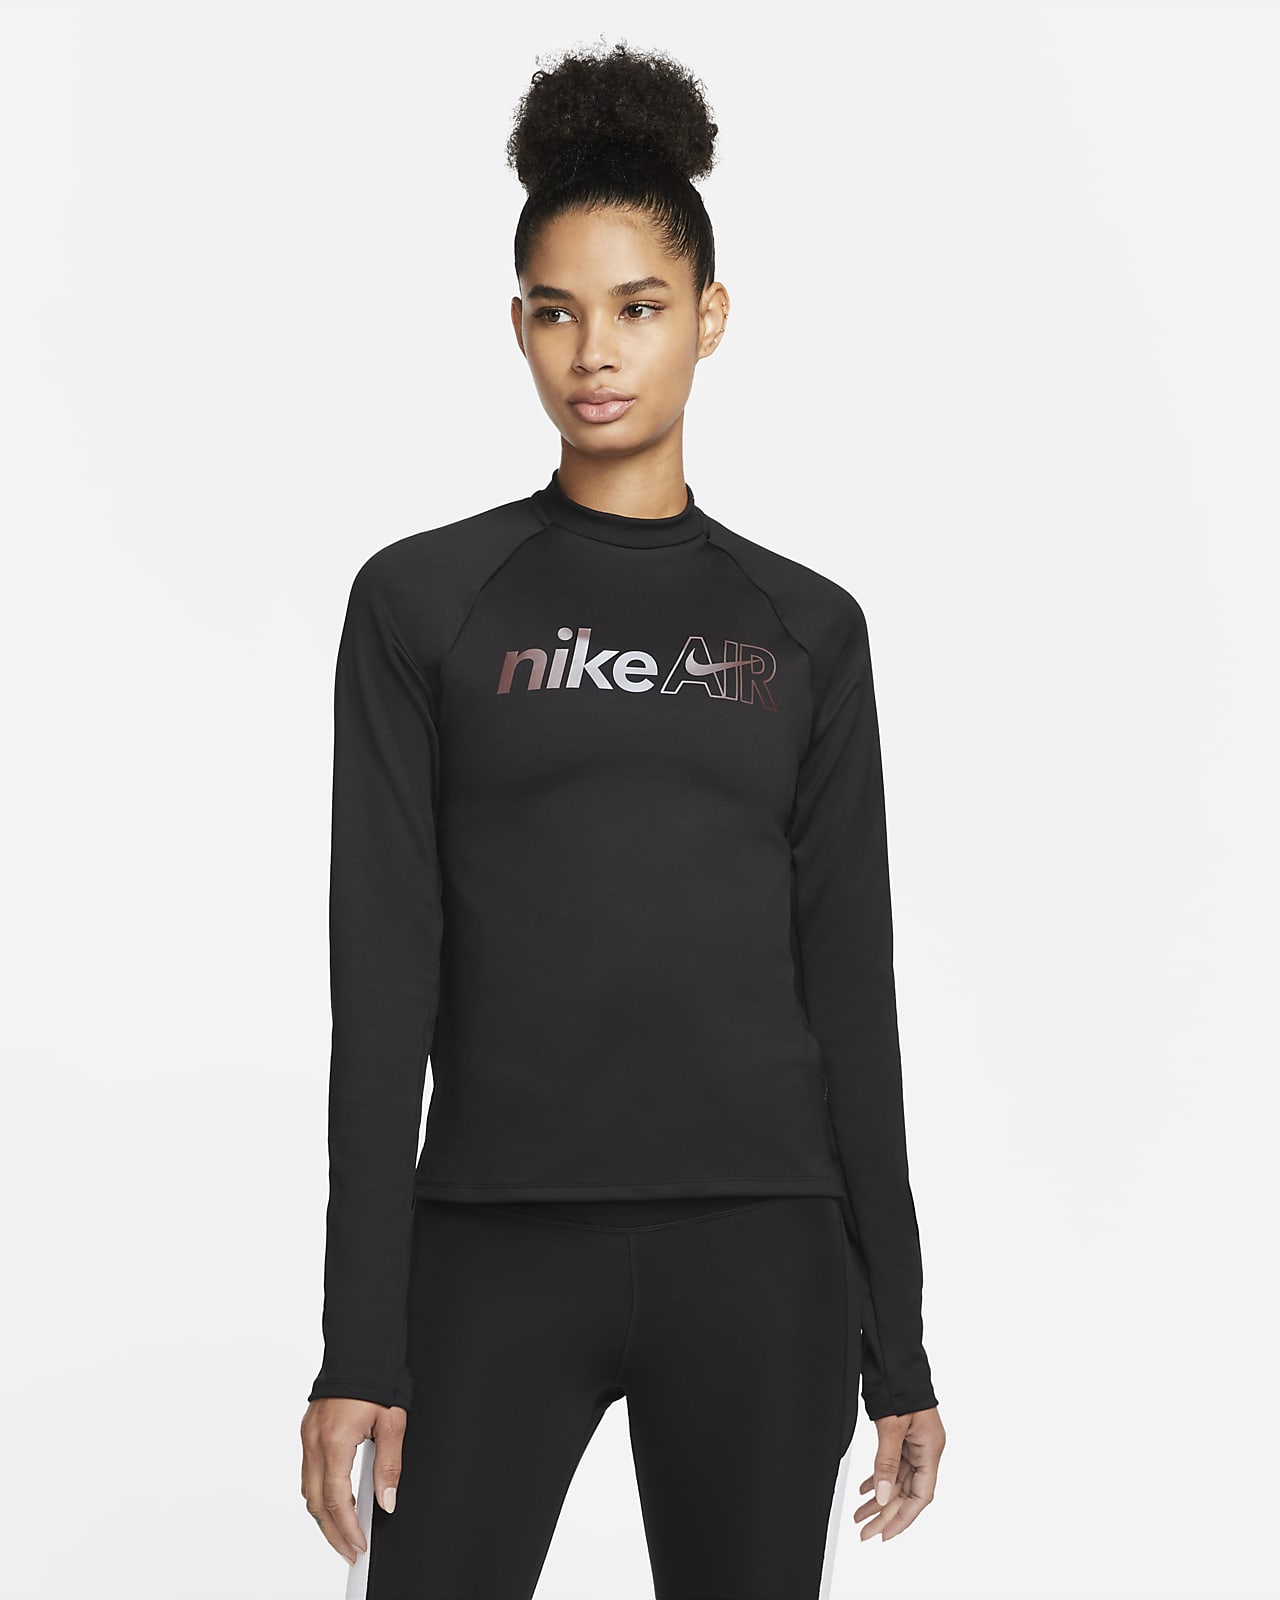 Nike Air Women's Running Midlayer